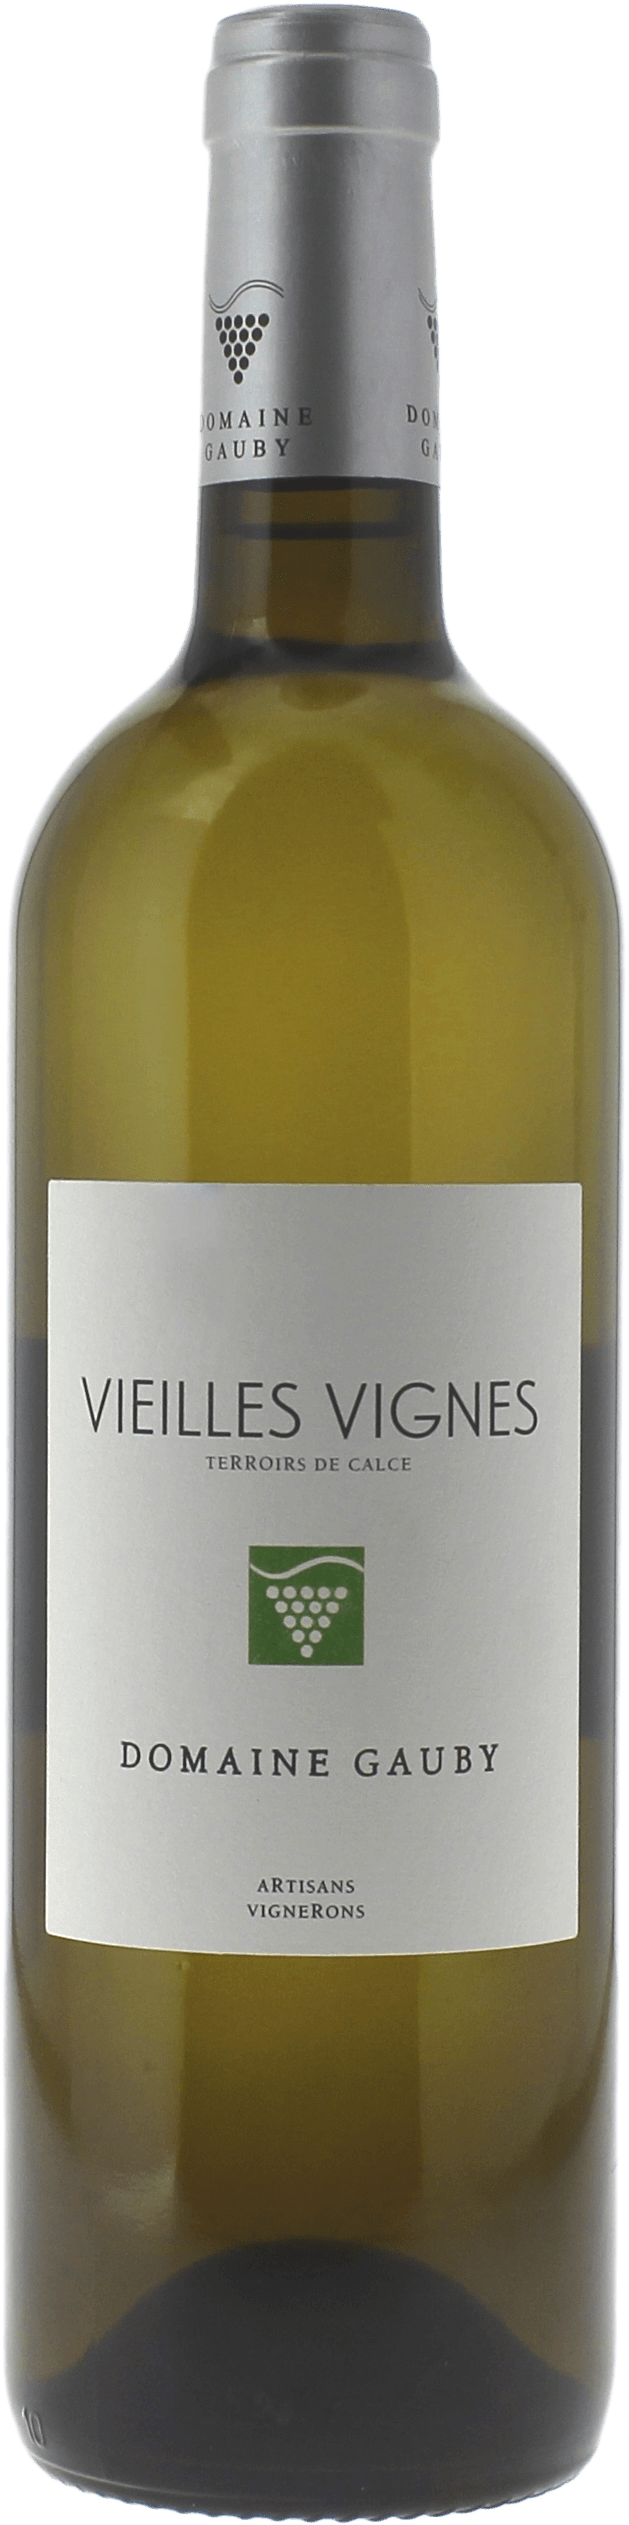 Gauby vieilles vignes blanc 2017  IGP Cotes Catalanes blanc, Languedoc